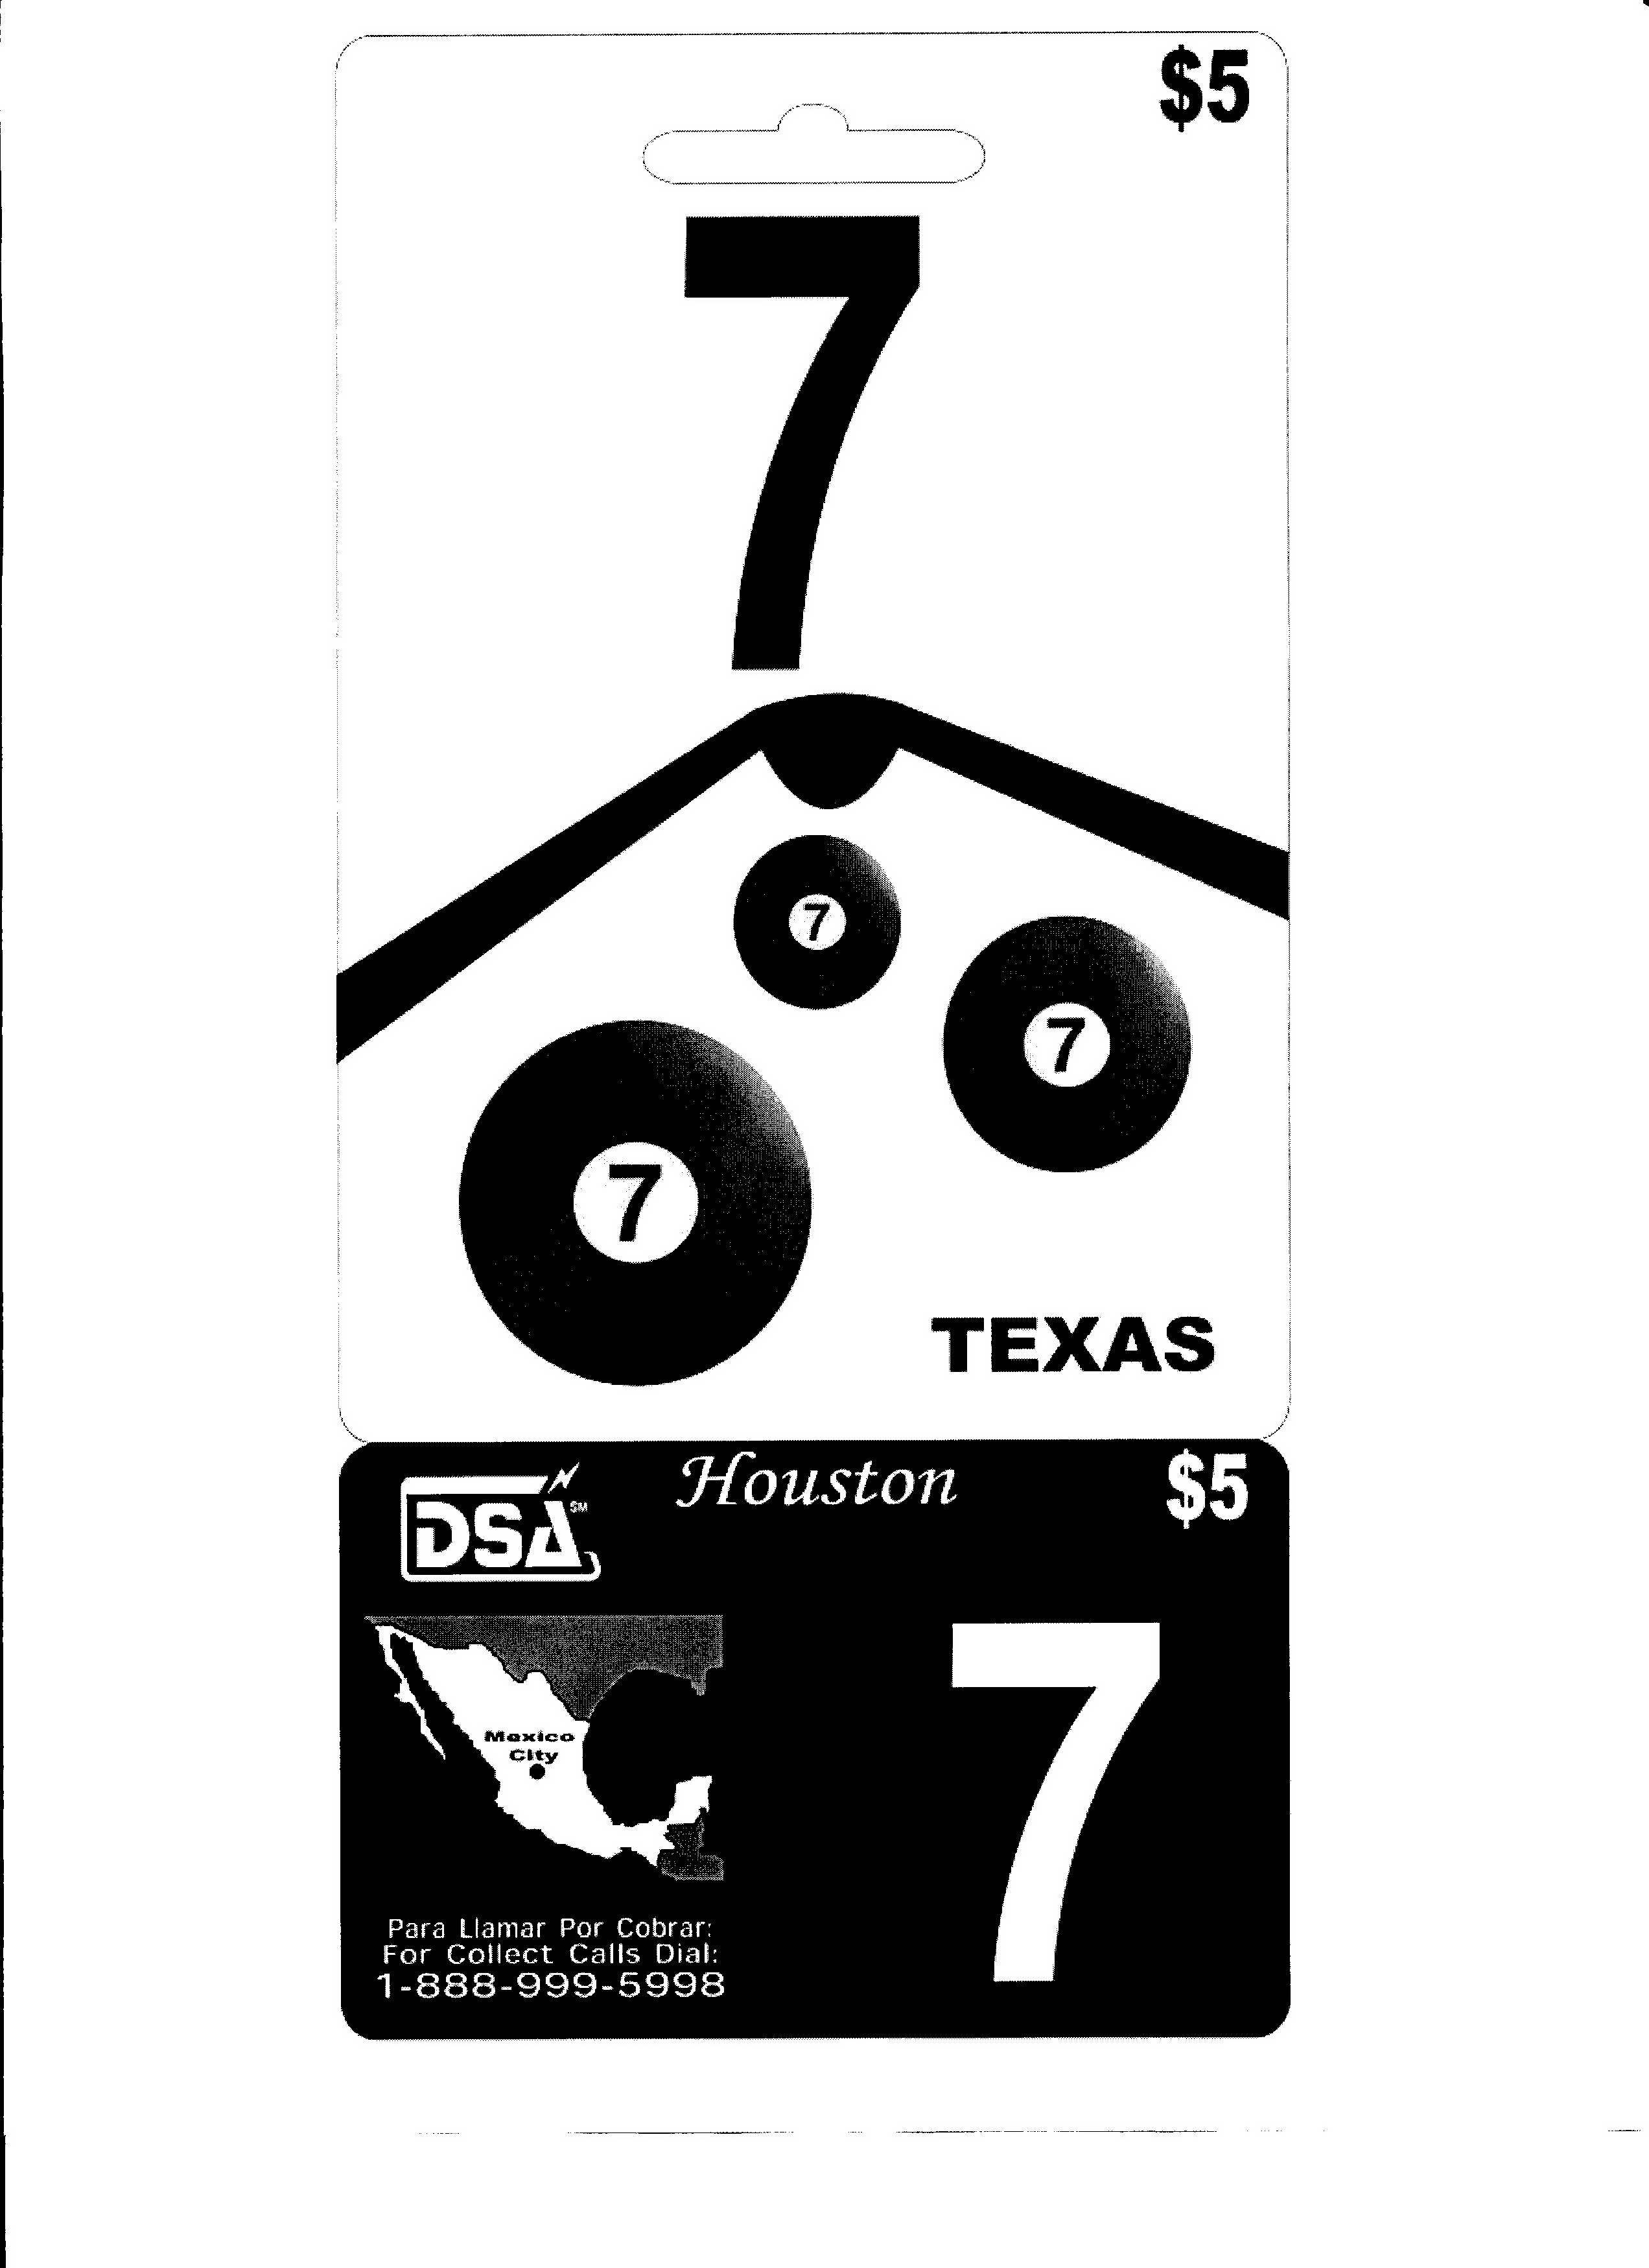  7 DSA HOUSTON TEXAS $5 MEXICO CITY PARA LIAMAR POR COBRAR: FOR COLLECT CALLS DIAL: 1-888-999-5998